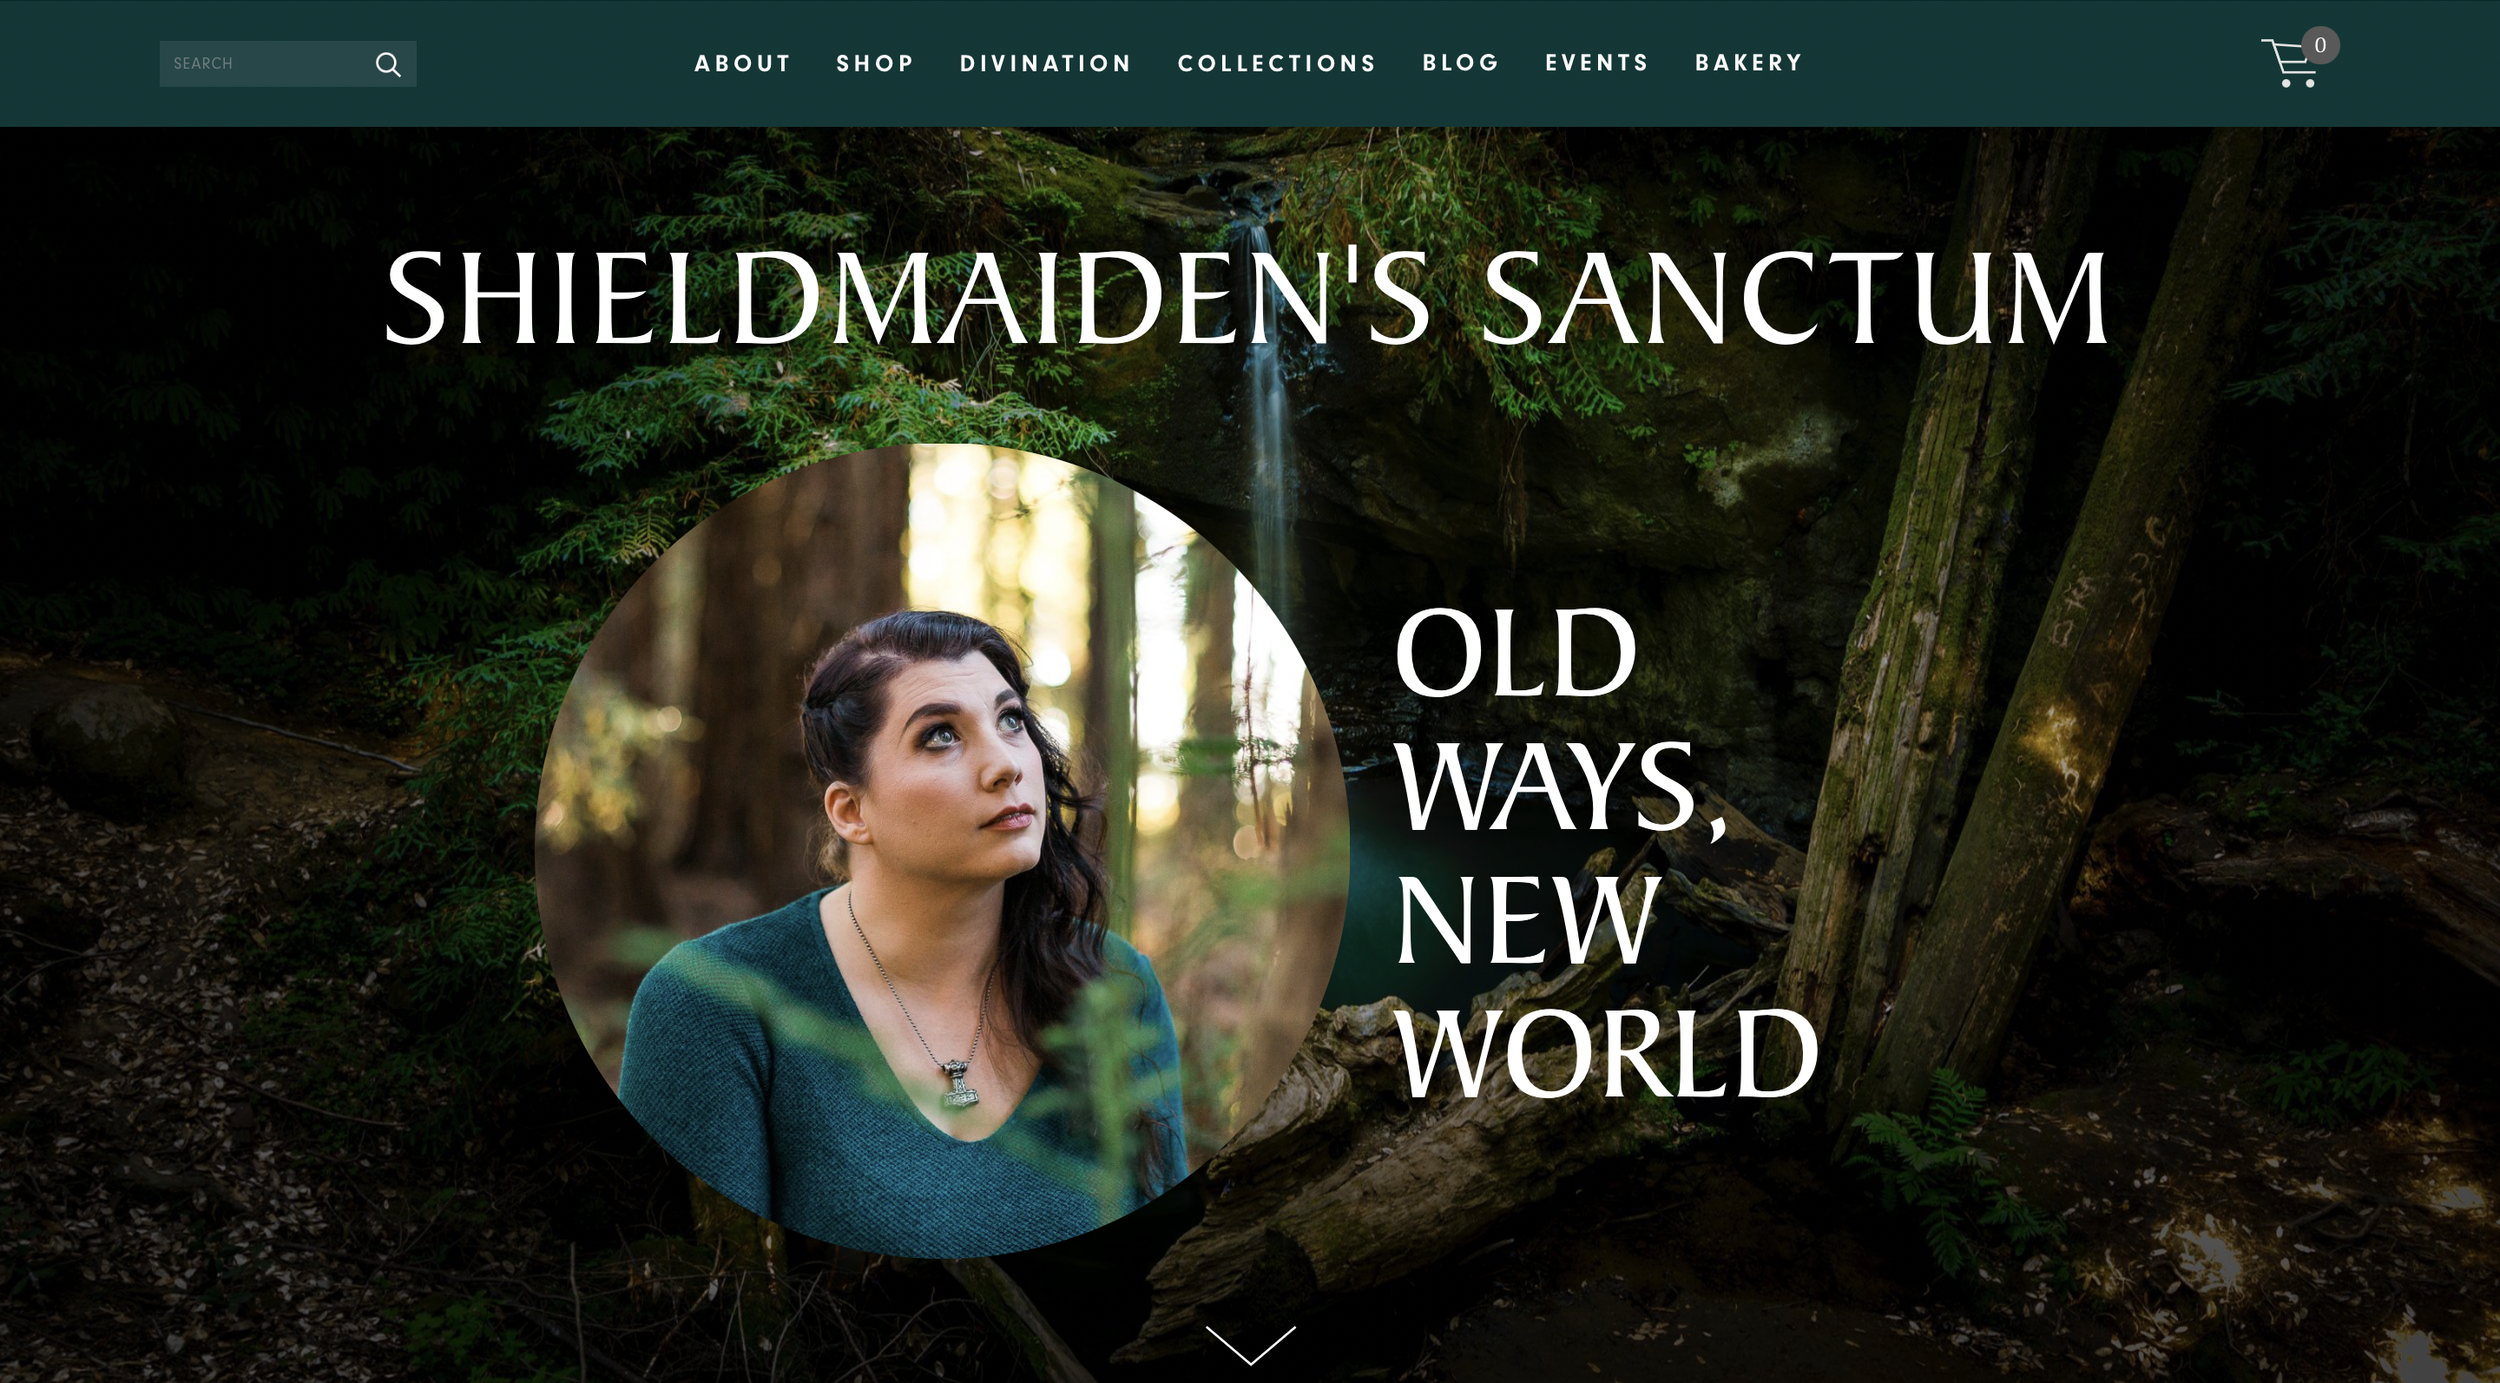 What Is A Shieldmaiden? — SHIELDMAIDEN'S SANCTUM